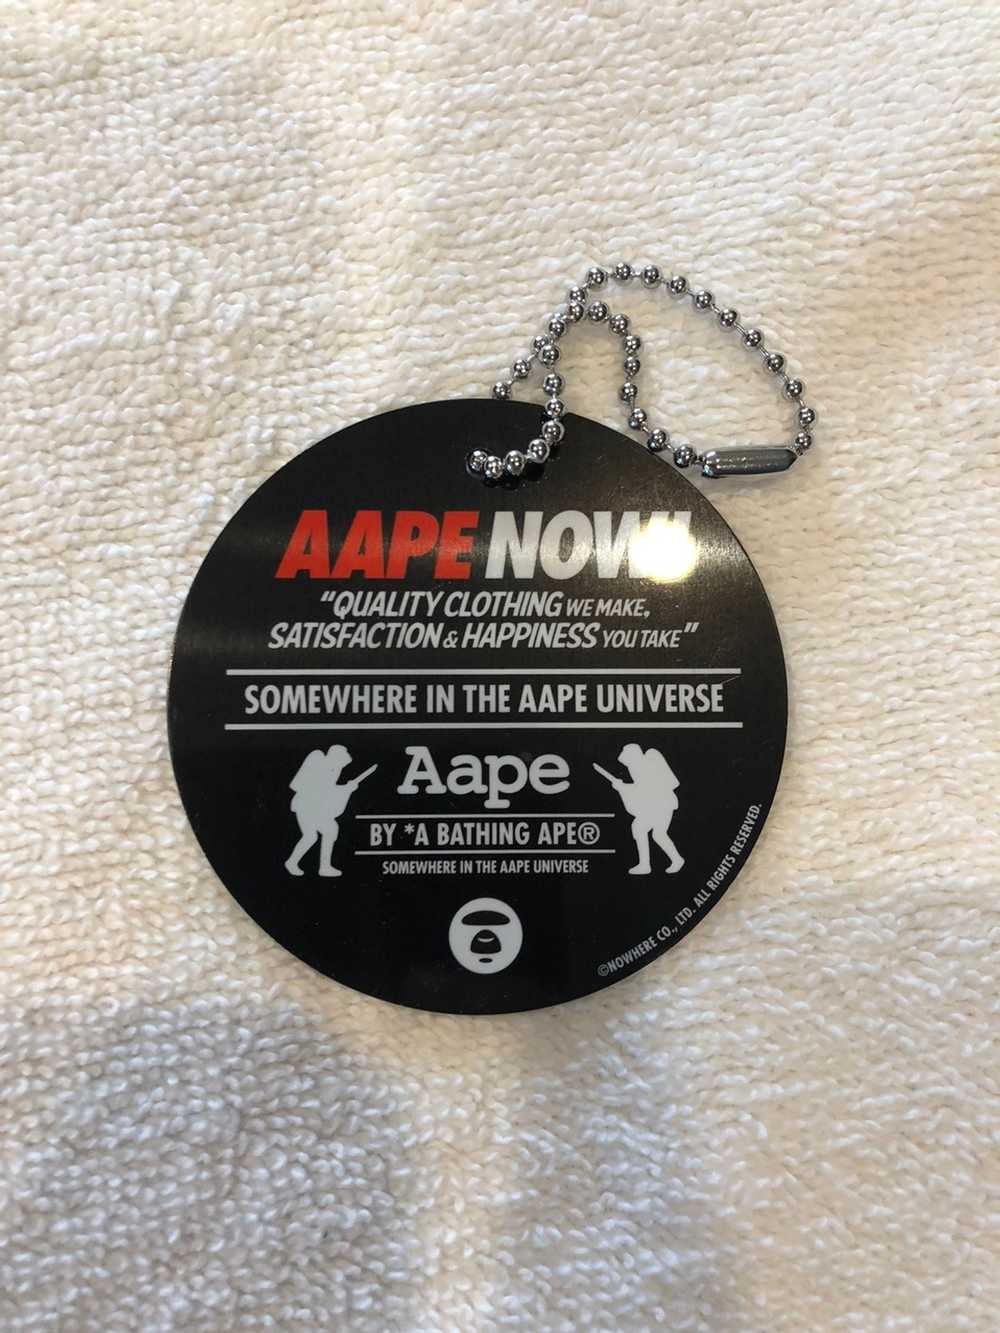 Aape Aape by a Bathing Ape pocket t - image 10